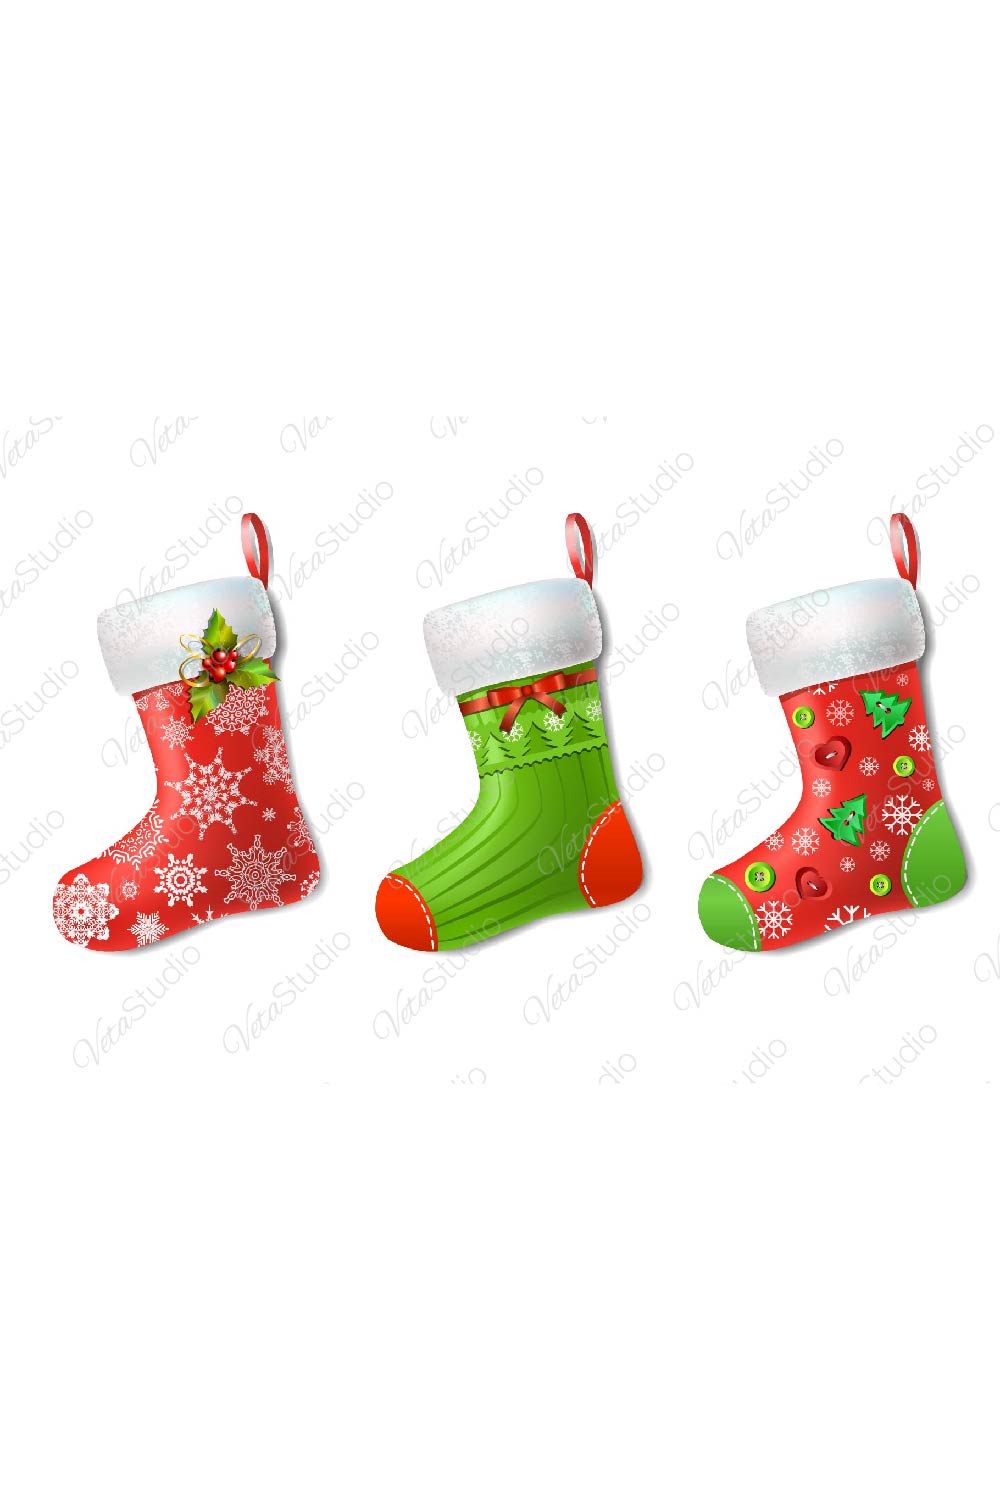 Christmas Socks Set Design pinterest image.